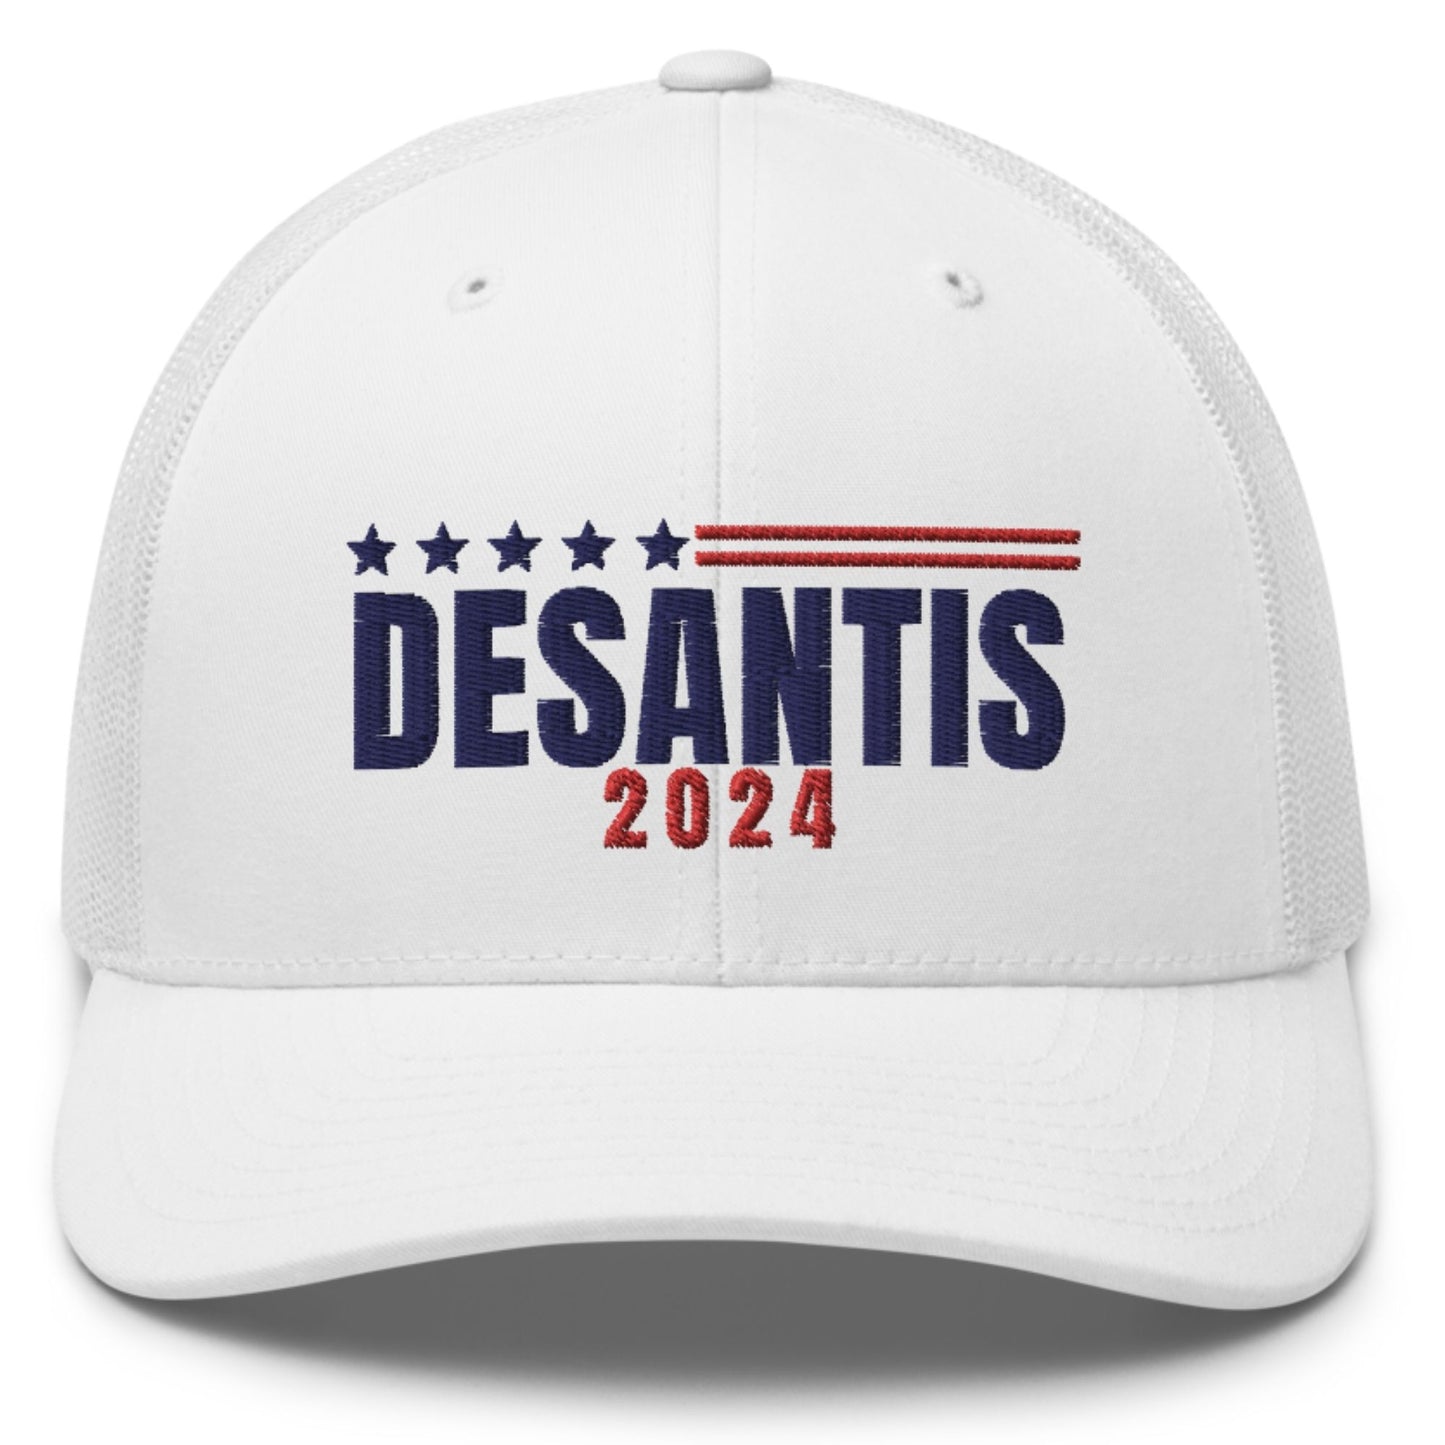 Ron Desantis for President 2024 Trucker Hat